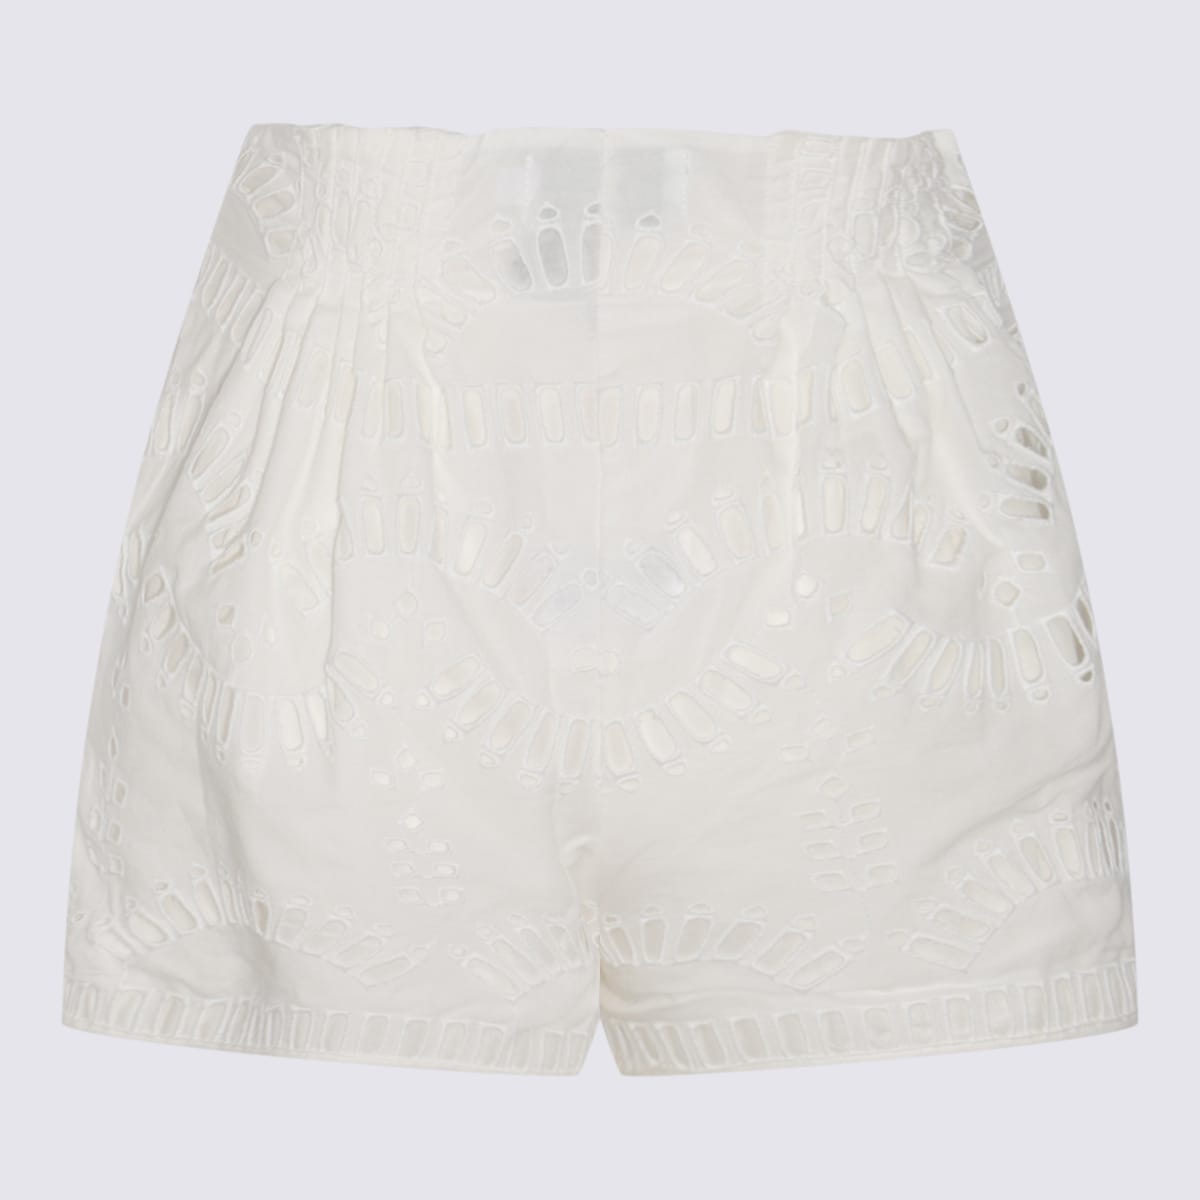 Shop Charo Ruiz White Cotton Shorts